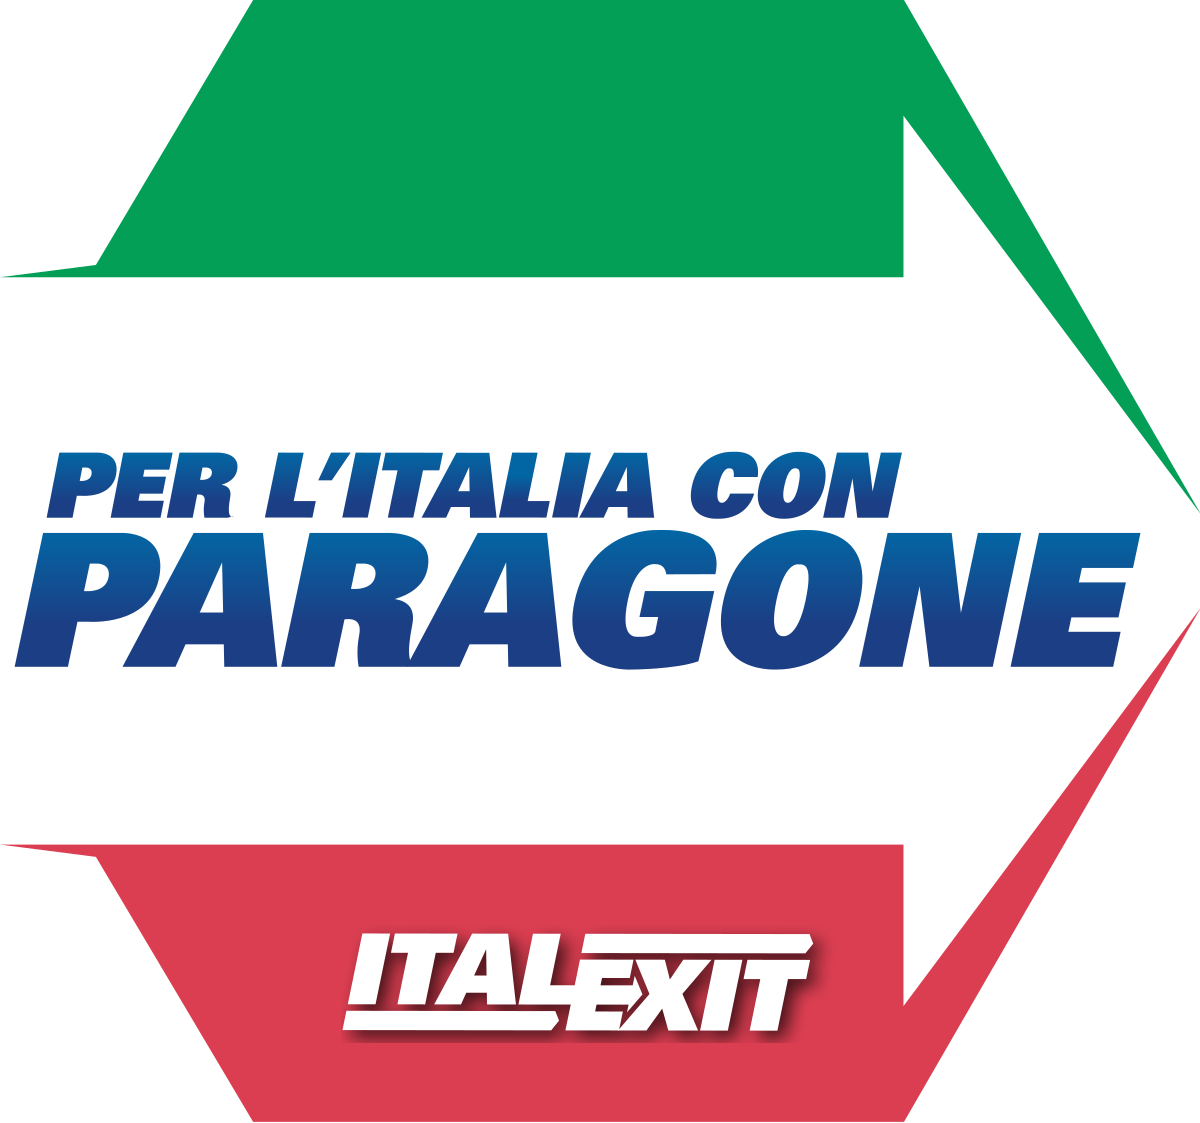 ITALEXIT - Paragone